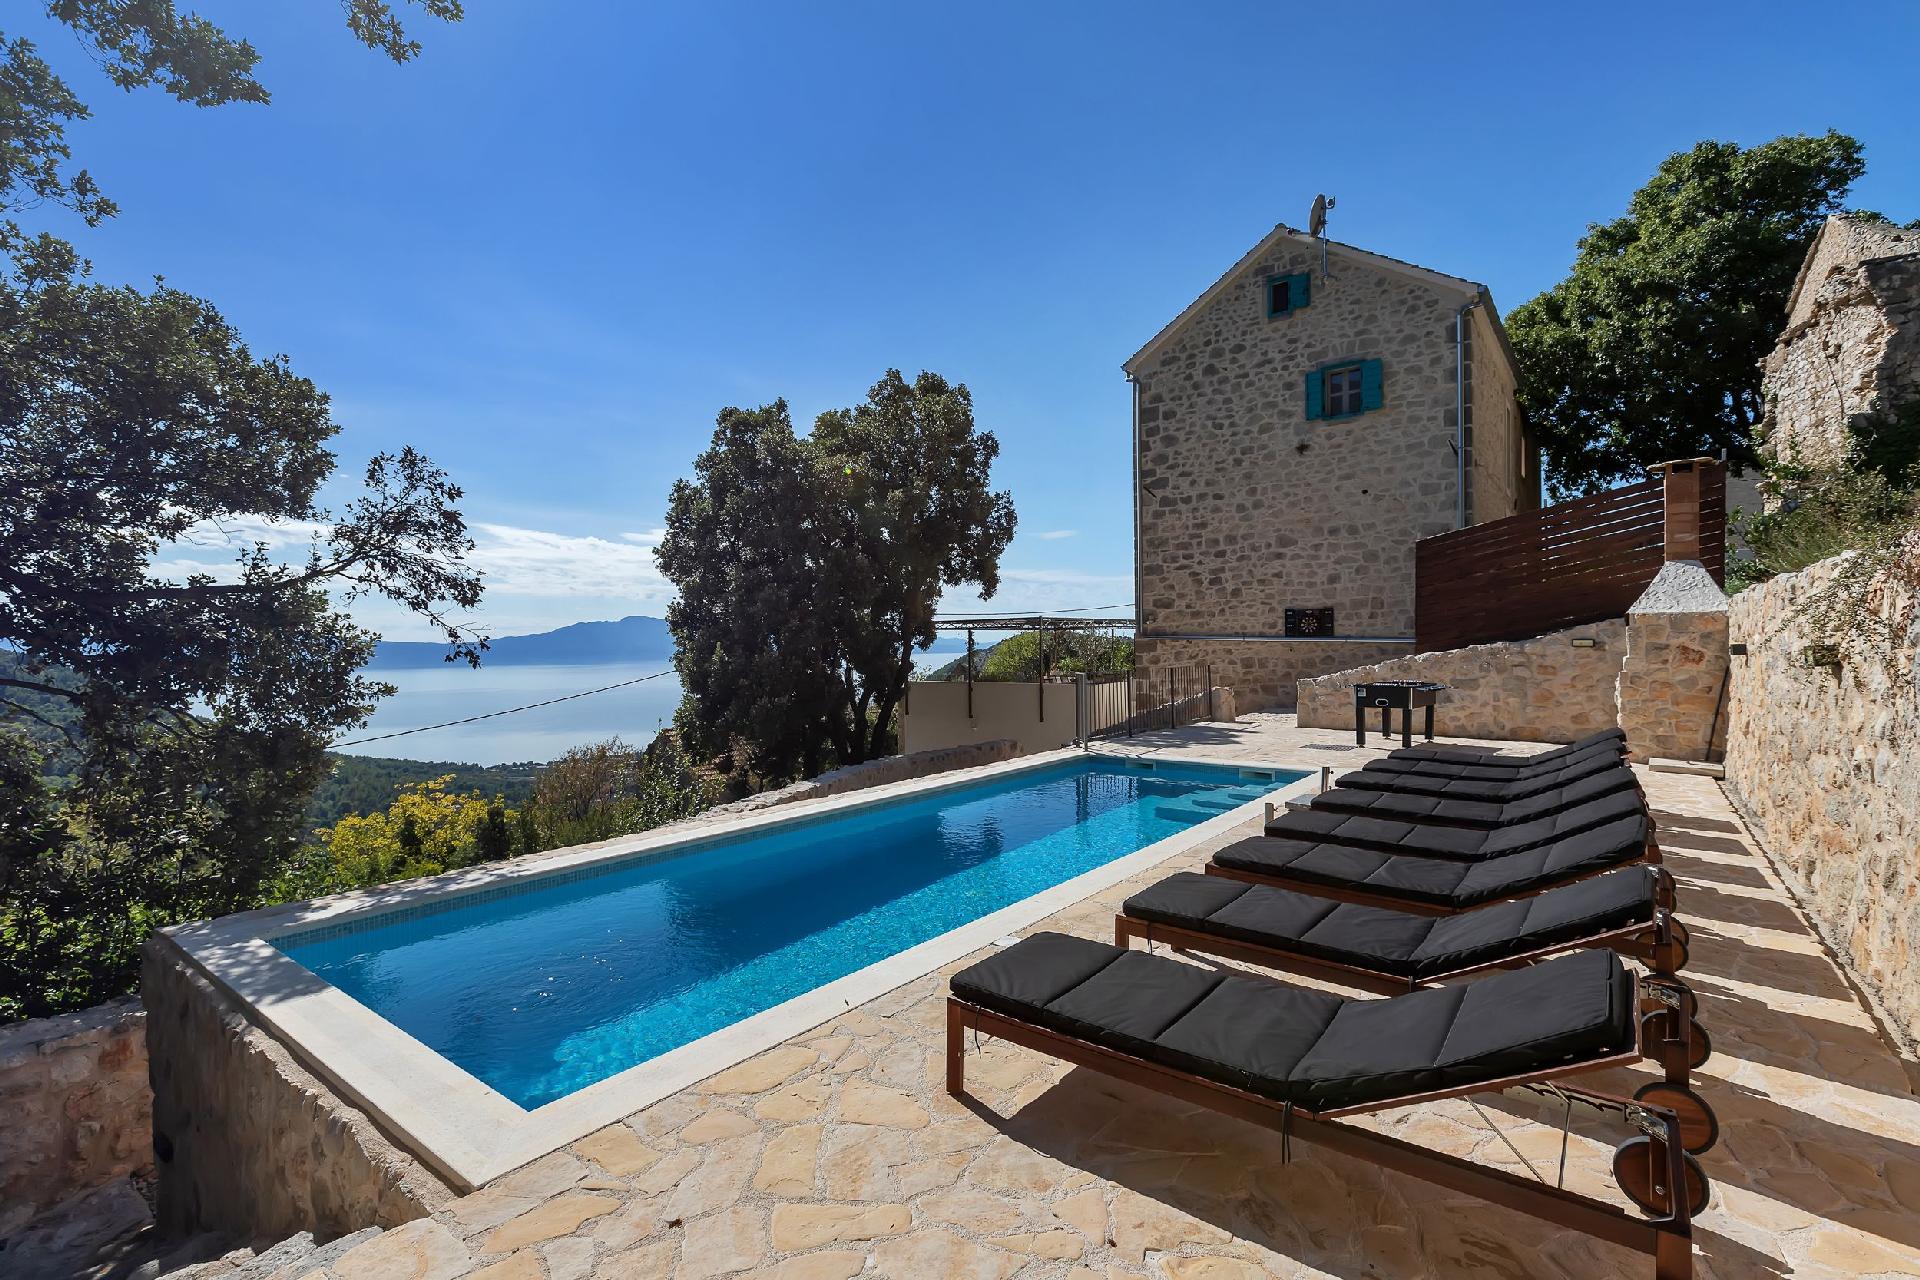 Romantische Steinvilla mit beheiztem Pool und Meer Ferienhaus in Kroatien